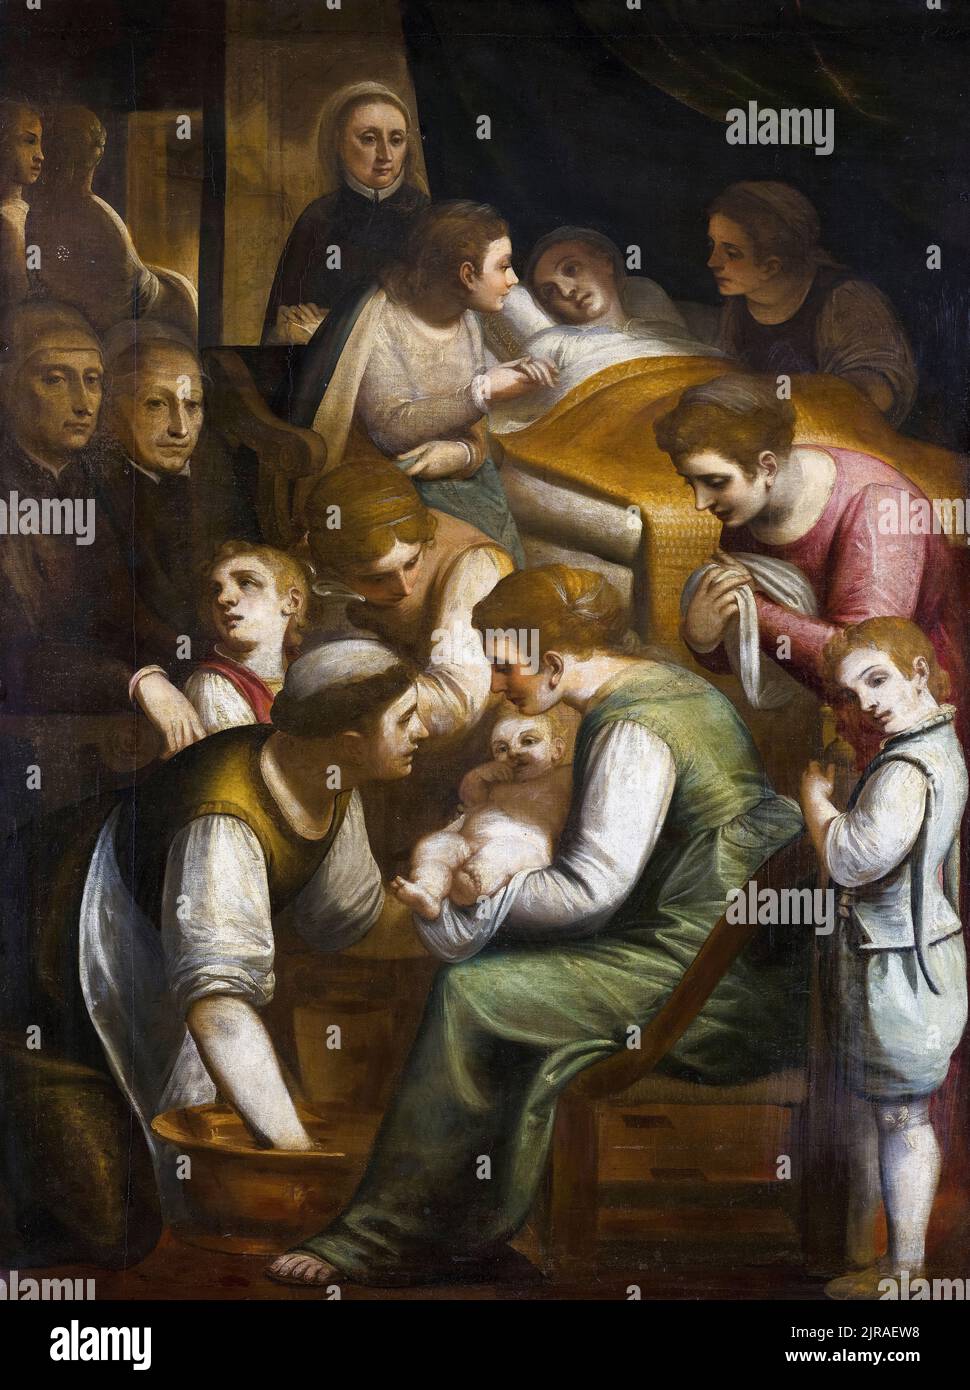 La naissance de Marie, peinture à l'huile sur toile par Luca Cambiaso, vers 1570 Banque D'Images